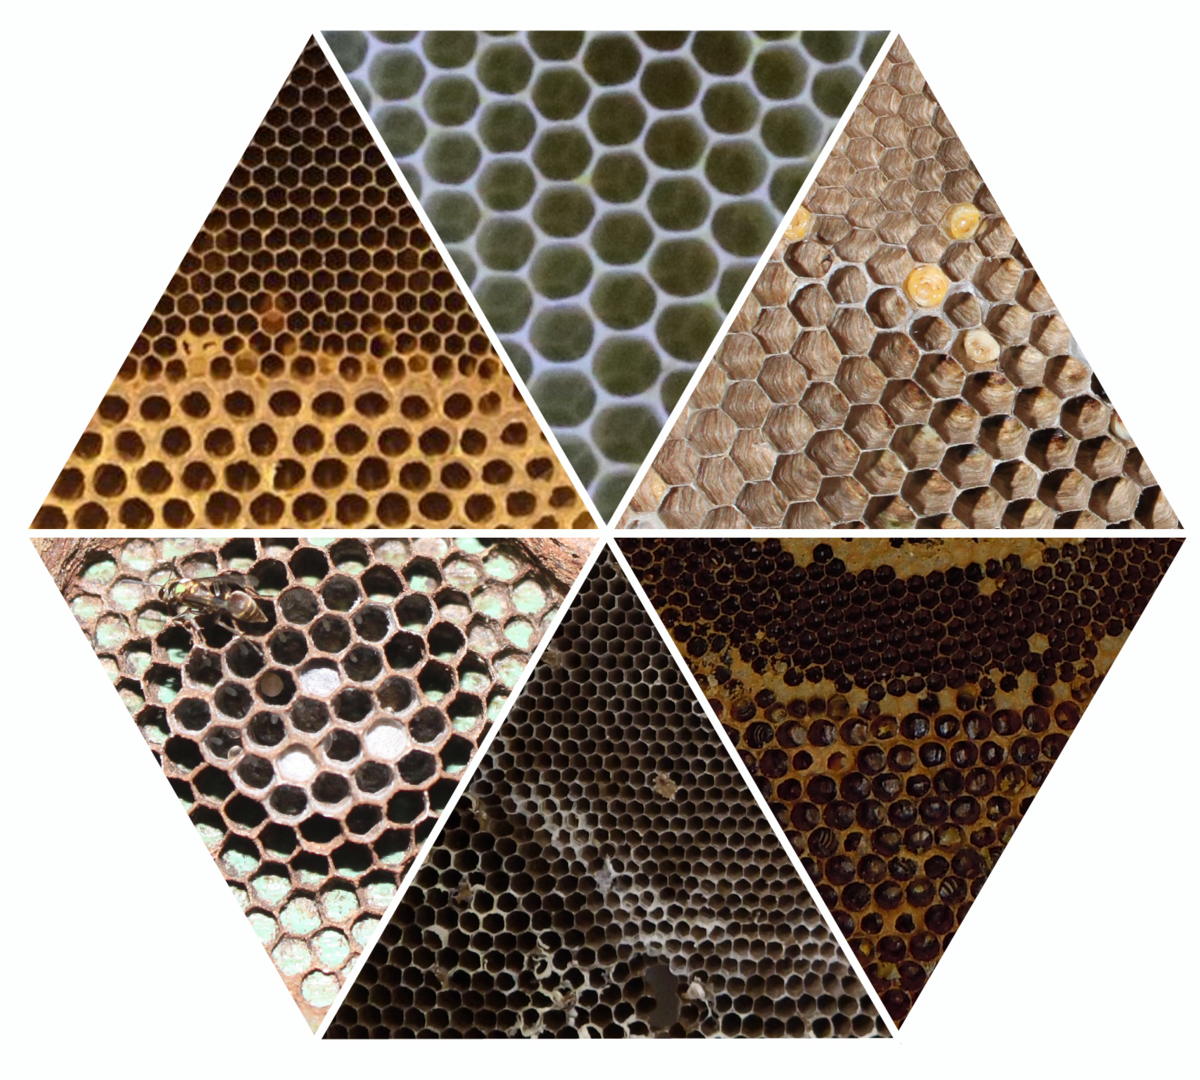 Eine Grafik von sechs verschiedenen Wabenmustern. Diese illustrieren die baulichen Unterschiede und Gemeinsamkeiten der Waben von Honigbienen und Wespen.